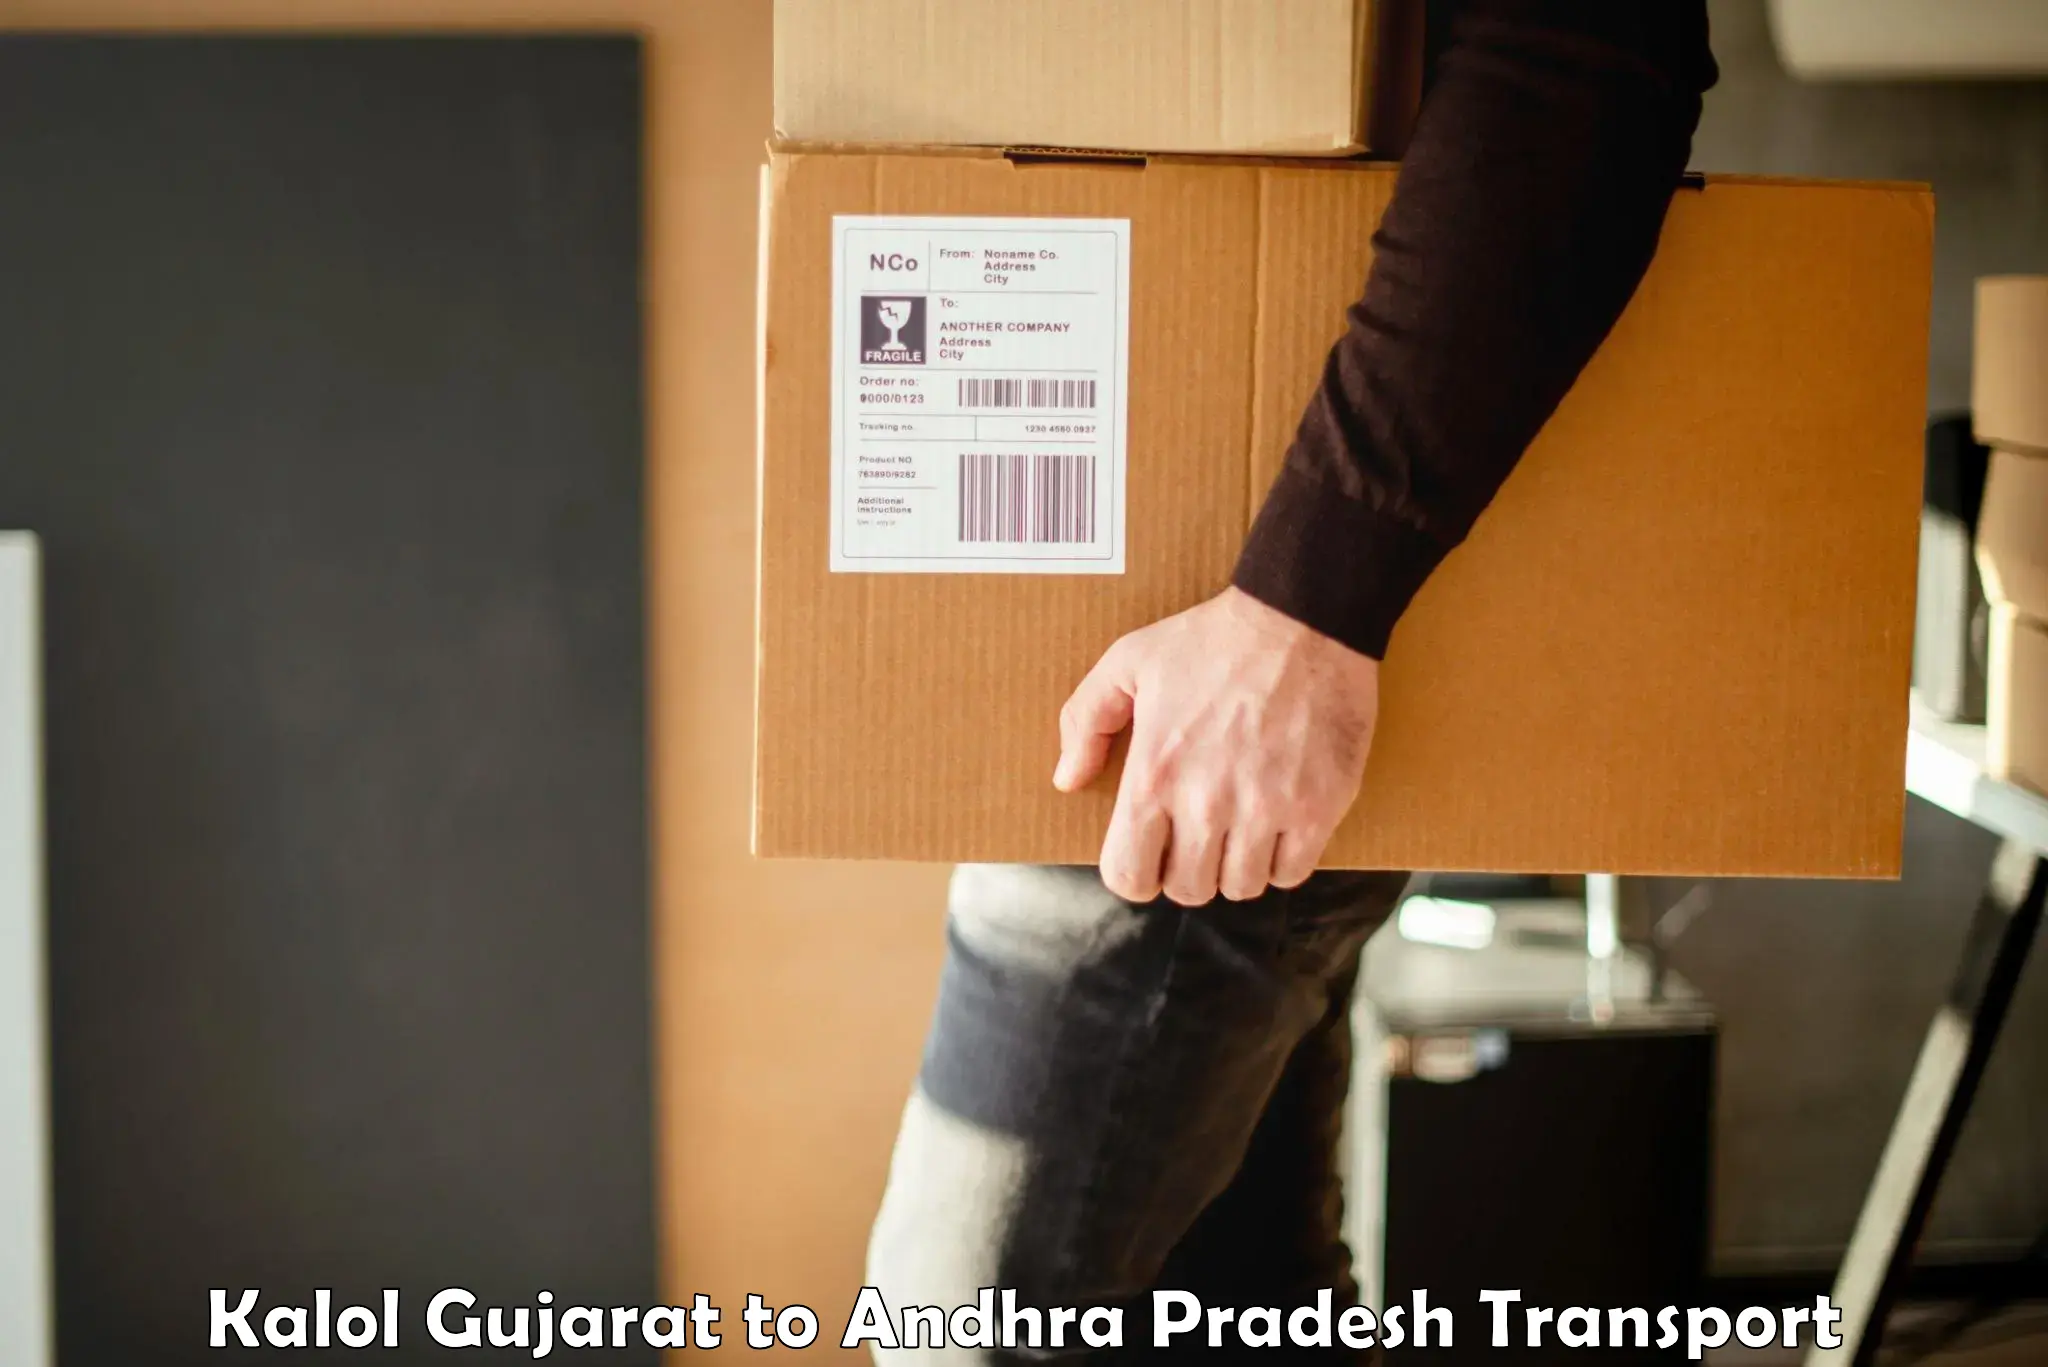 Lorry transport service Kalol Gujarat to Andhra Pradesh